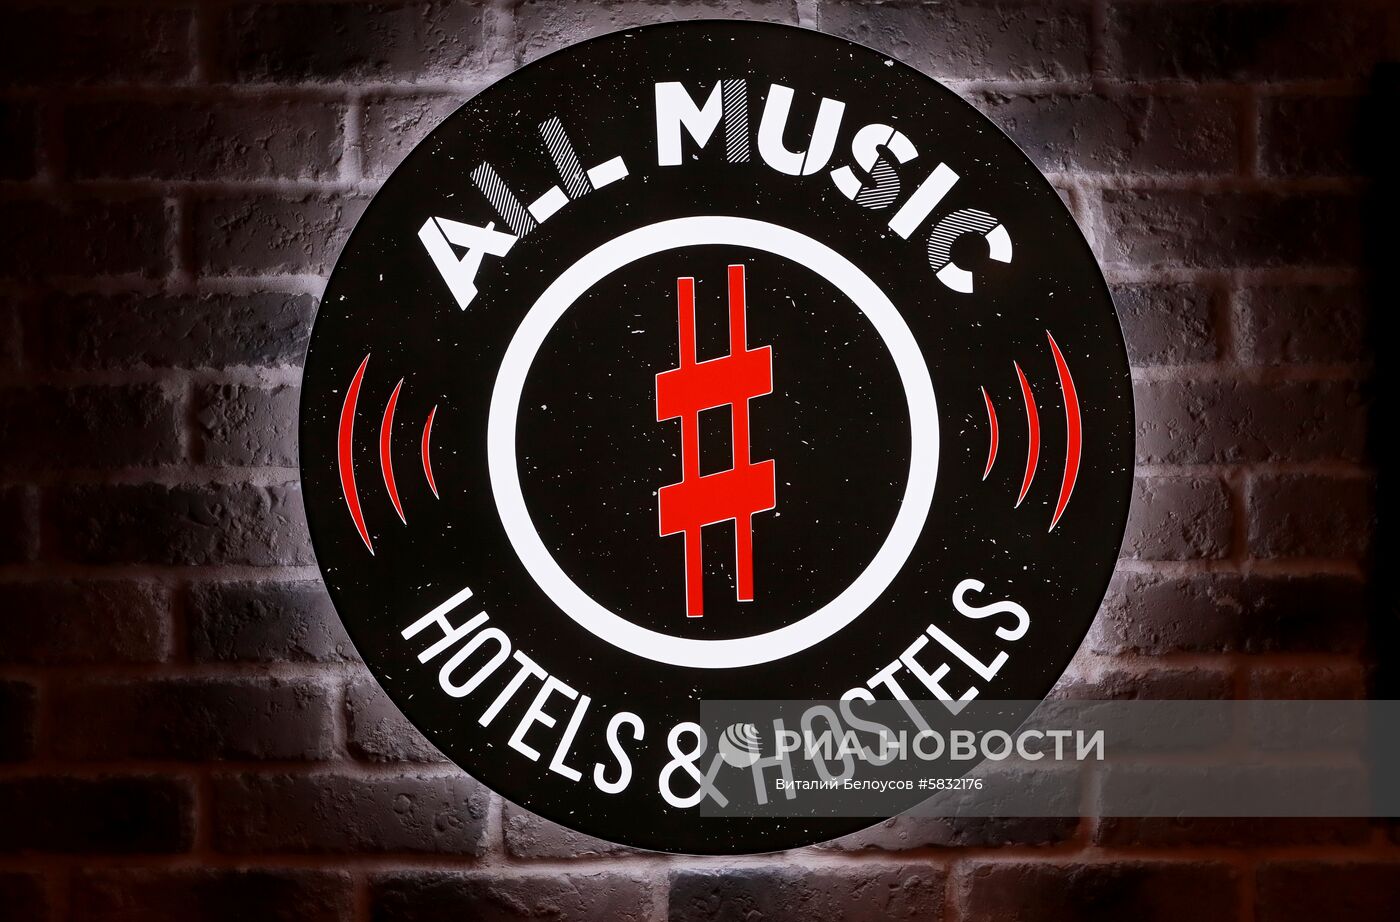 Хостел All Music #1 в Москве